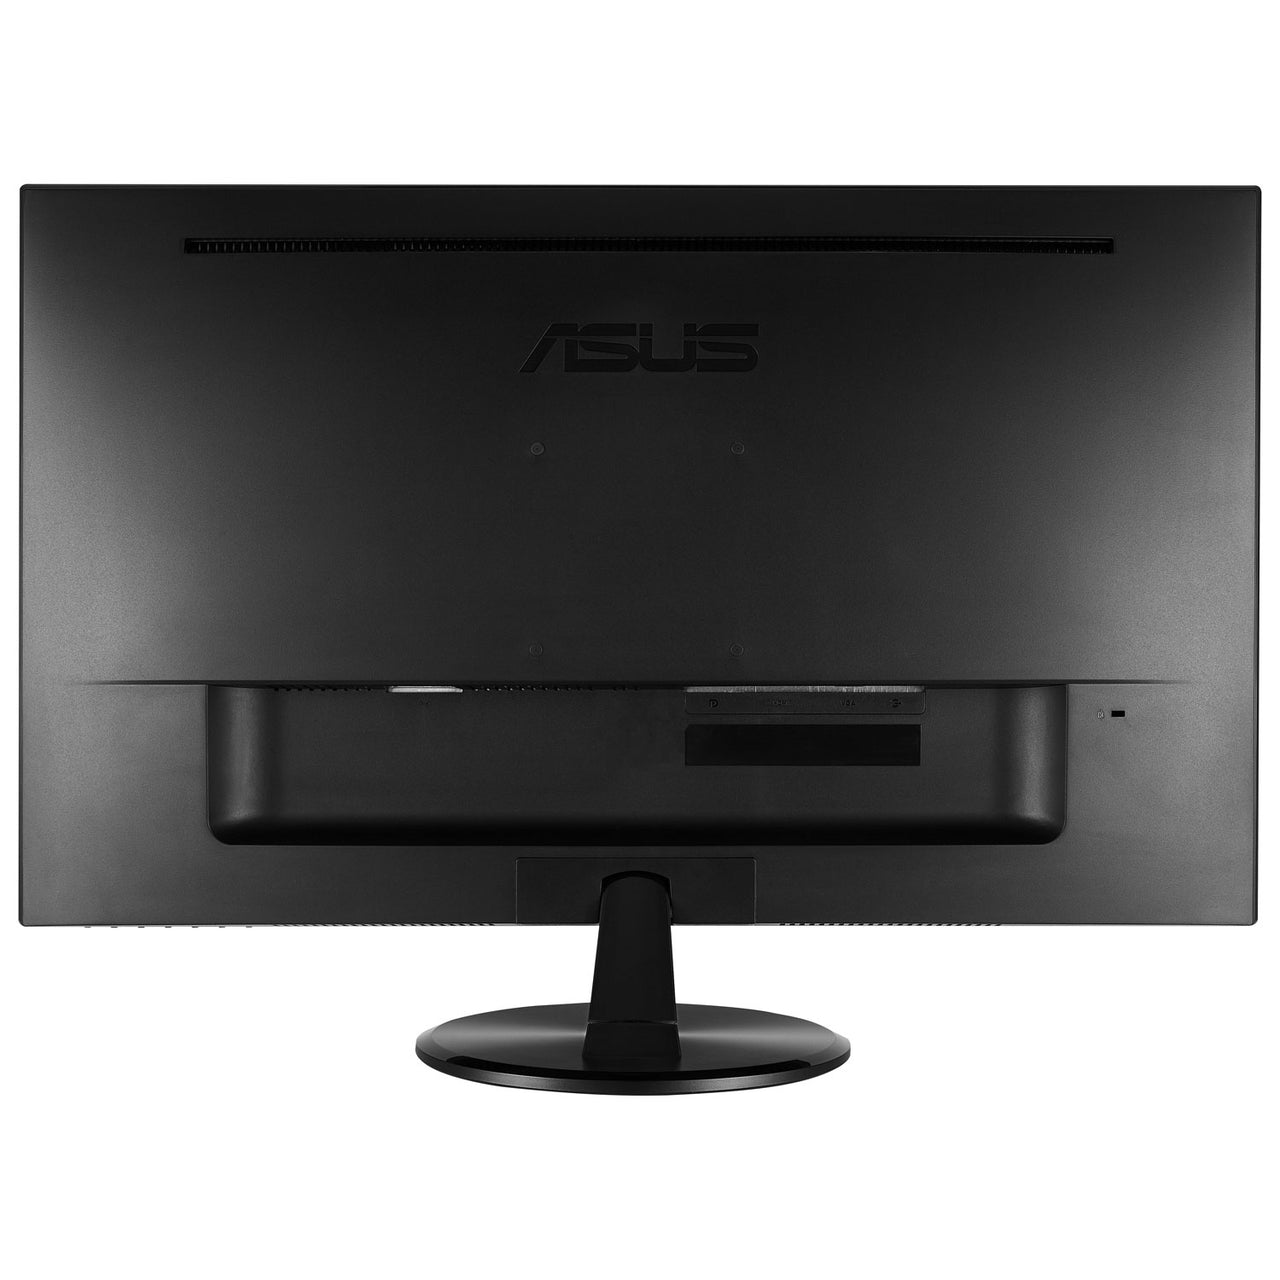 ASUS 21.5" FHD 75Hz 1ms GTG TN LED FreeSync Gaming Monitor (VP228QG) - Black